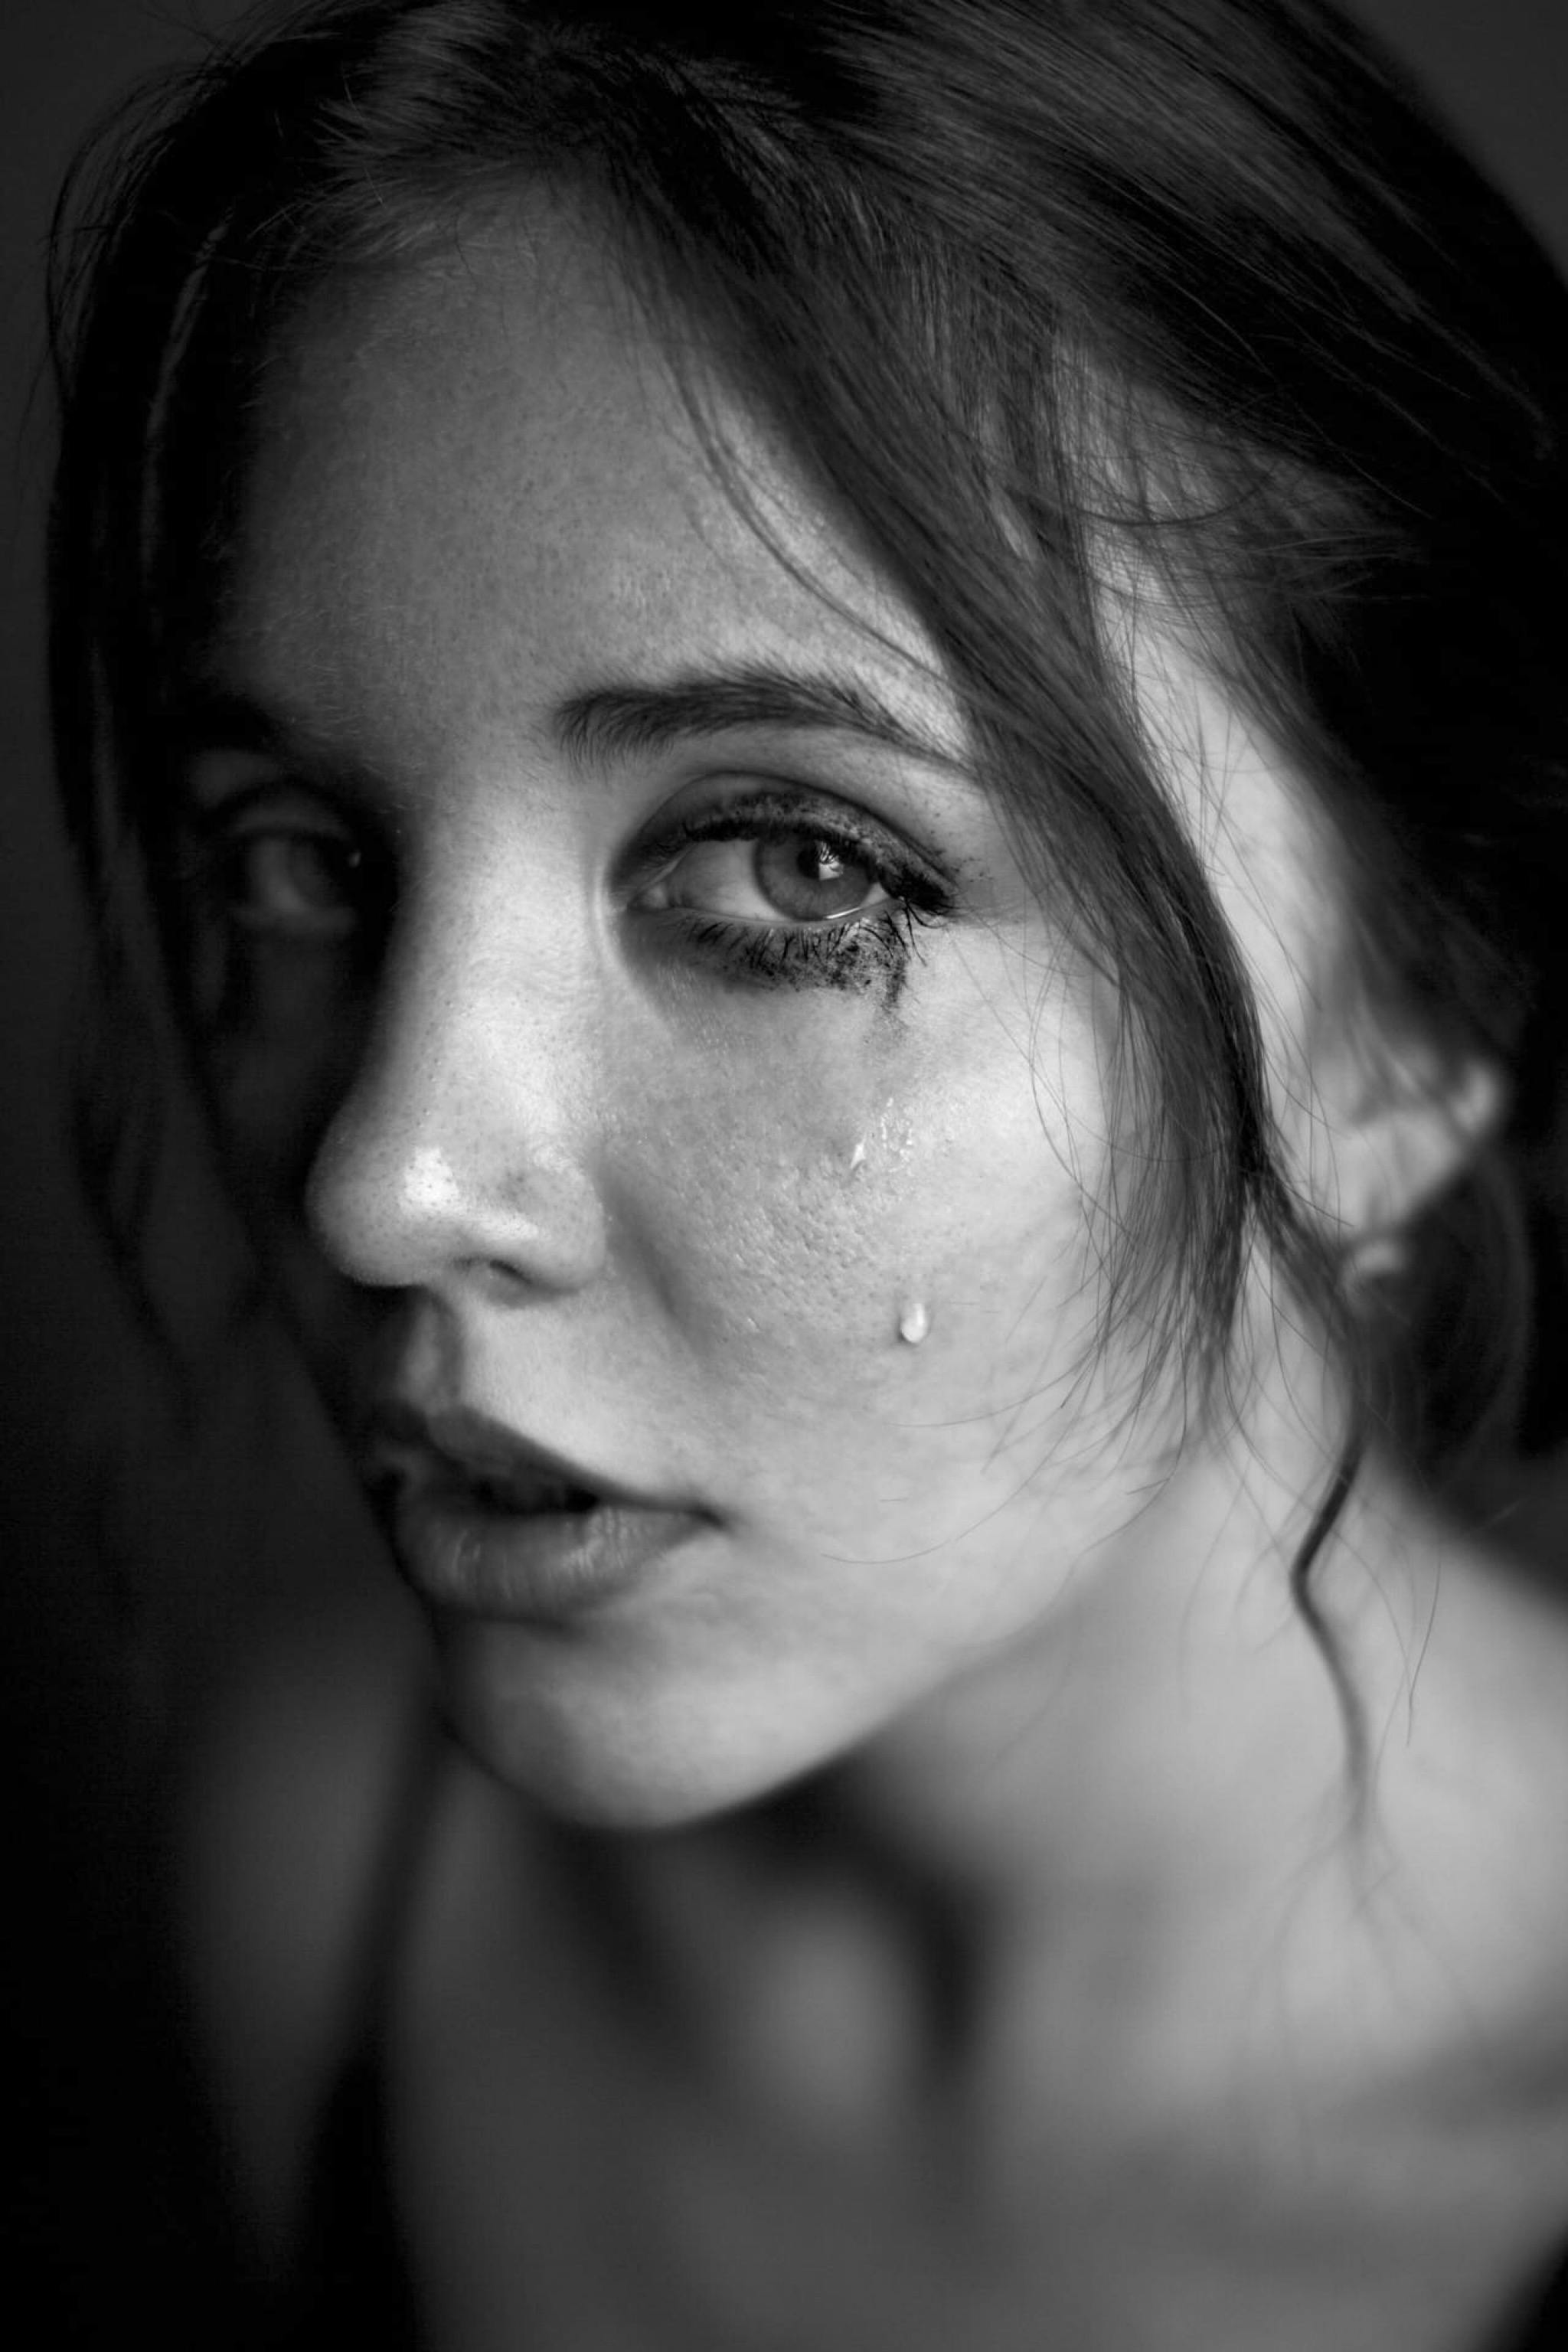 A sad young woman | Source: Pexels